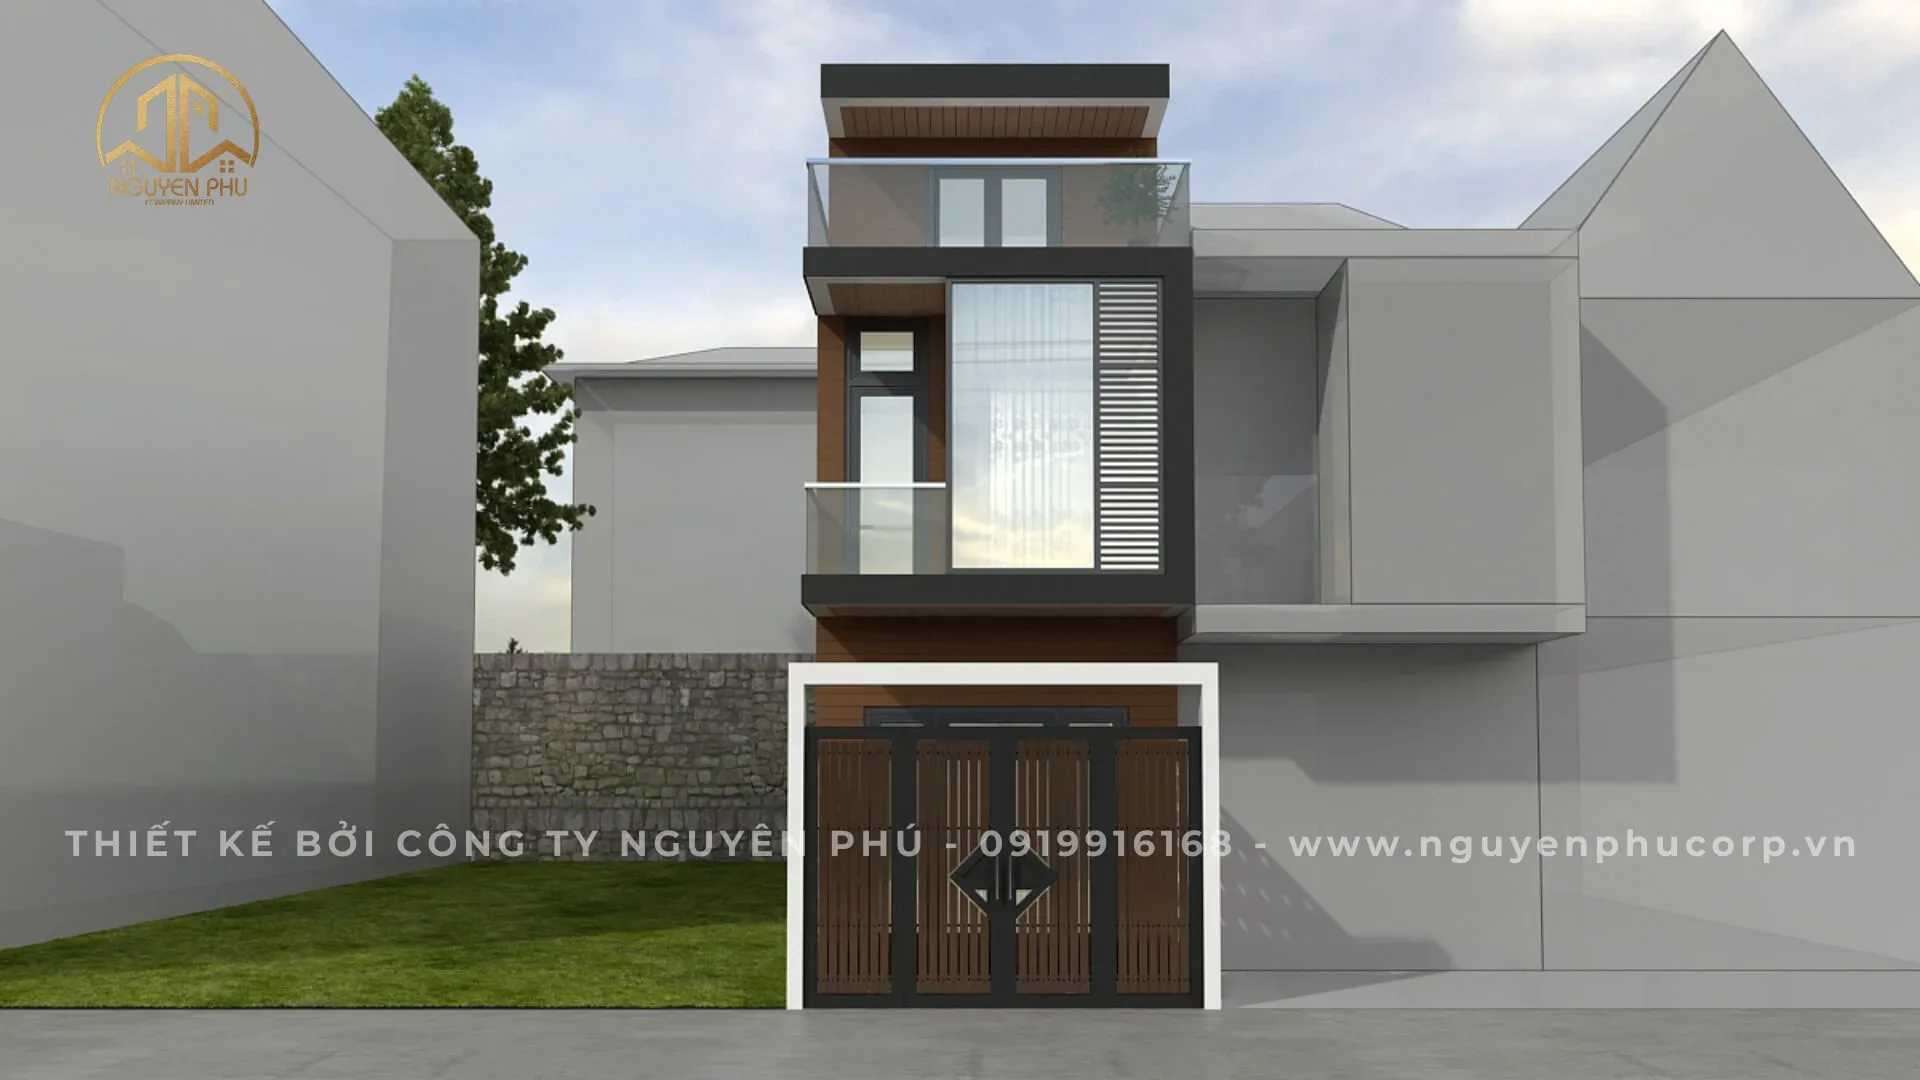 Mẫu nhà mái chữ A 12 - Công ty Nguyên Phú